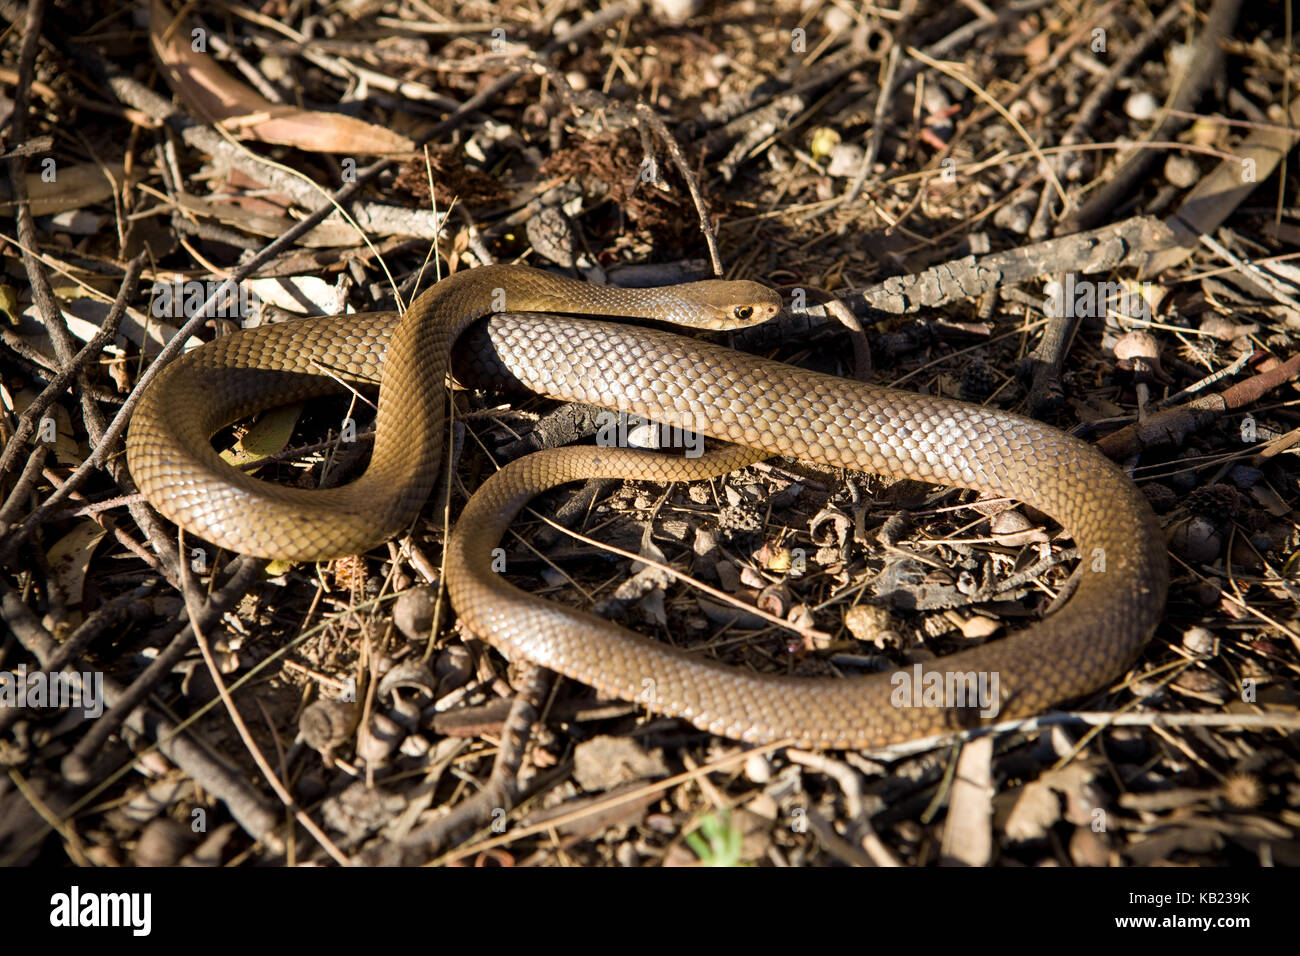 Abitare una vasta porzione di Australia dai deserti alle regioni costiere, l'Orientale Brown è uno dei più letali serpenti nel mondo. Sebbene nota Foto Stock